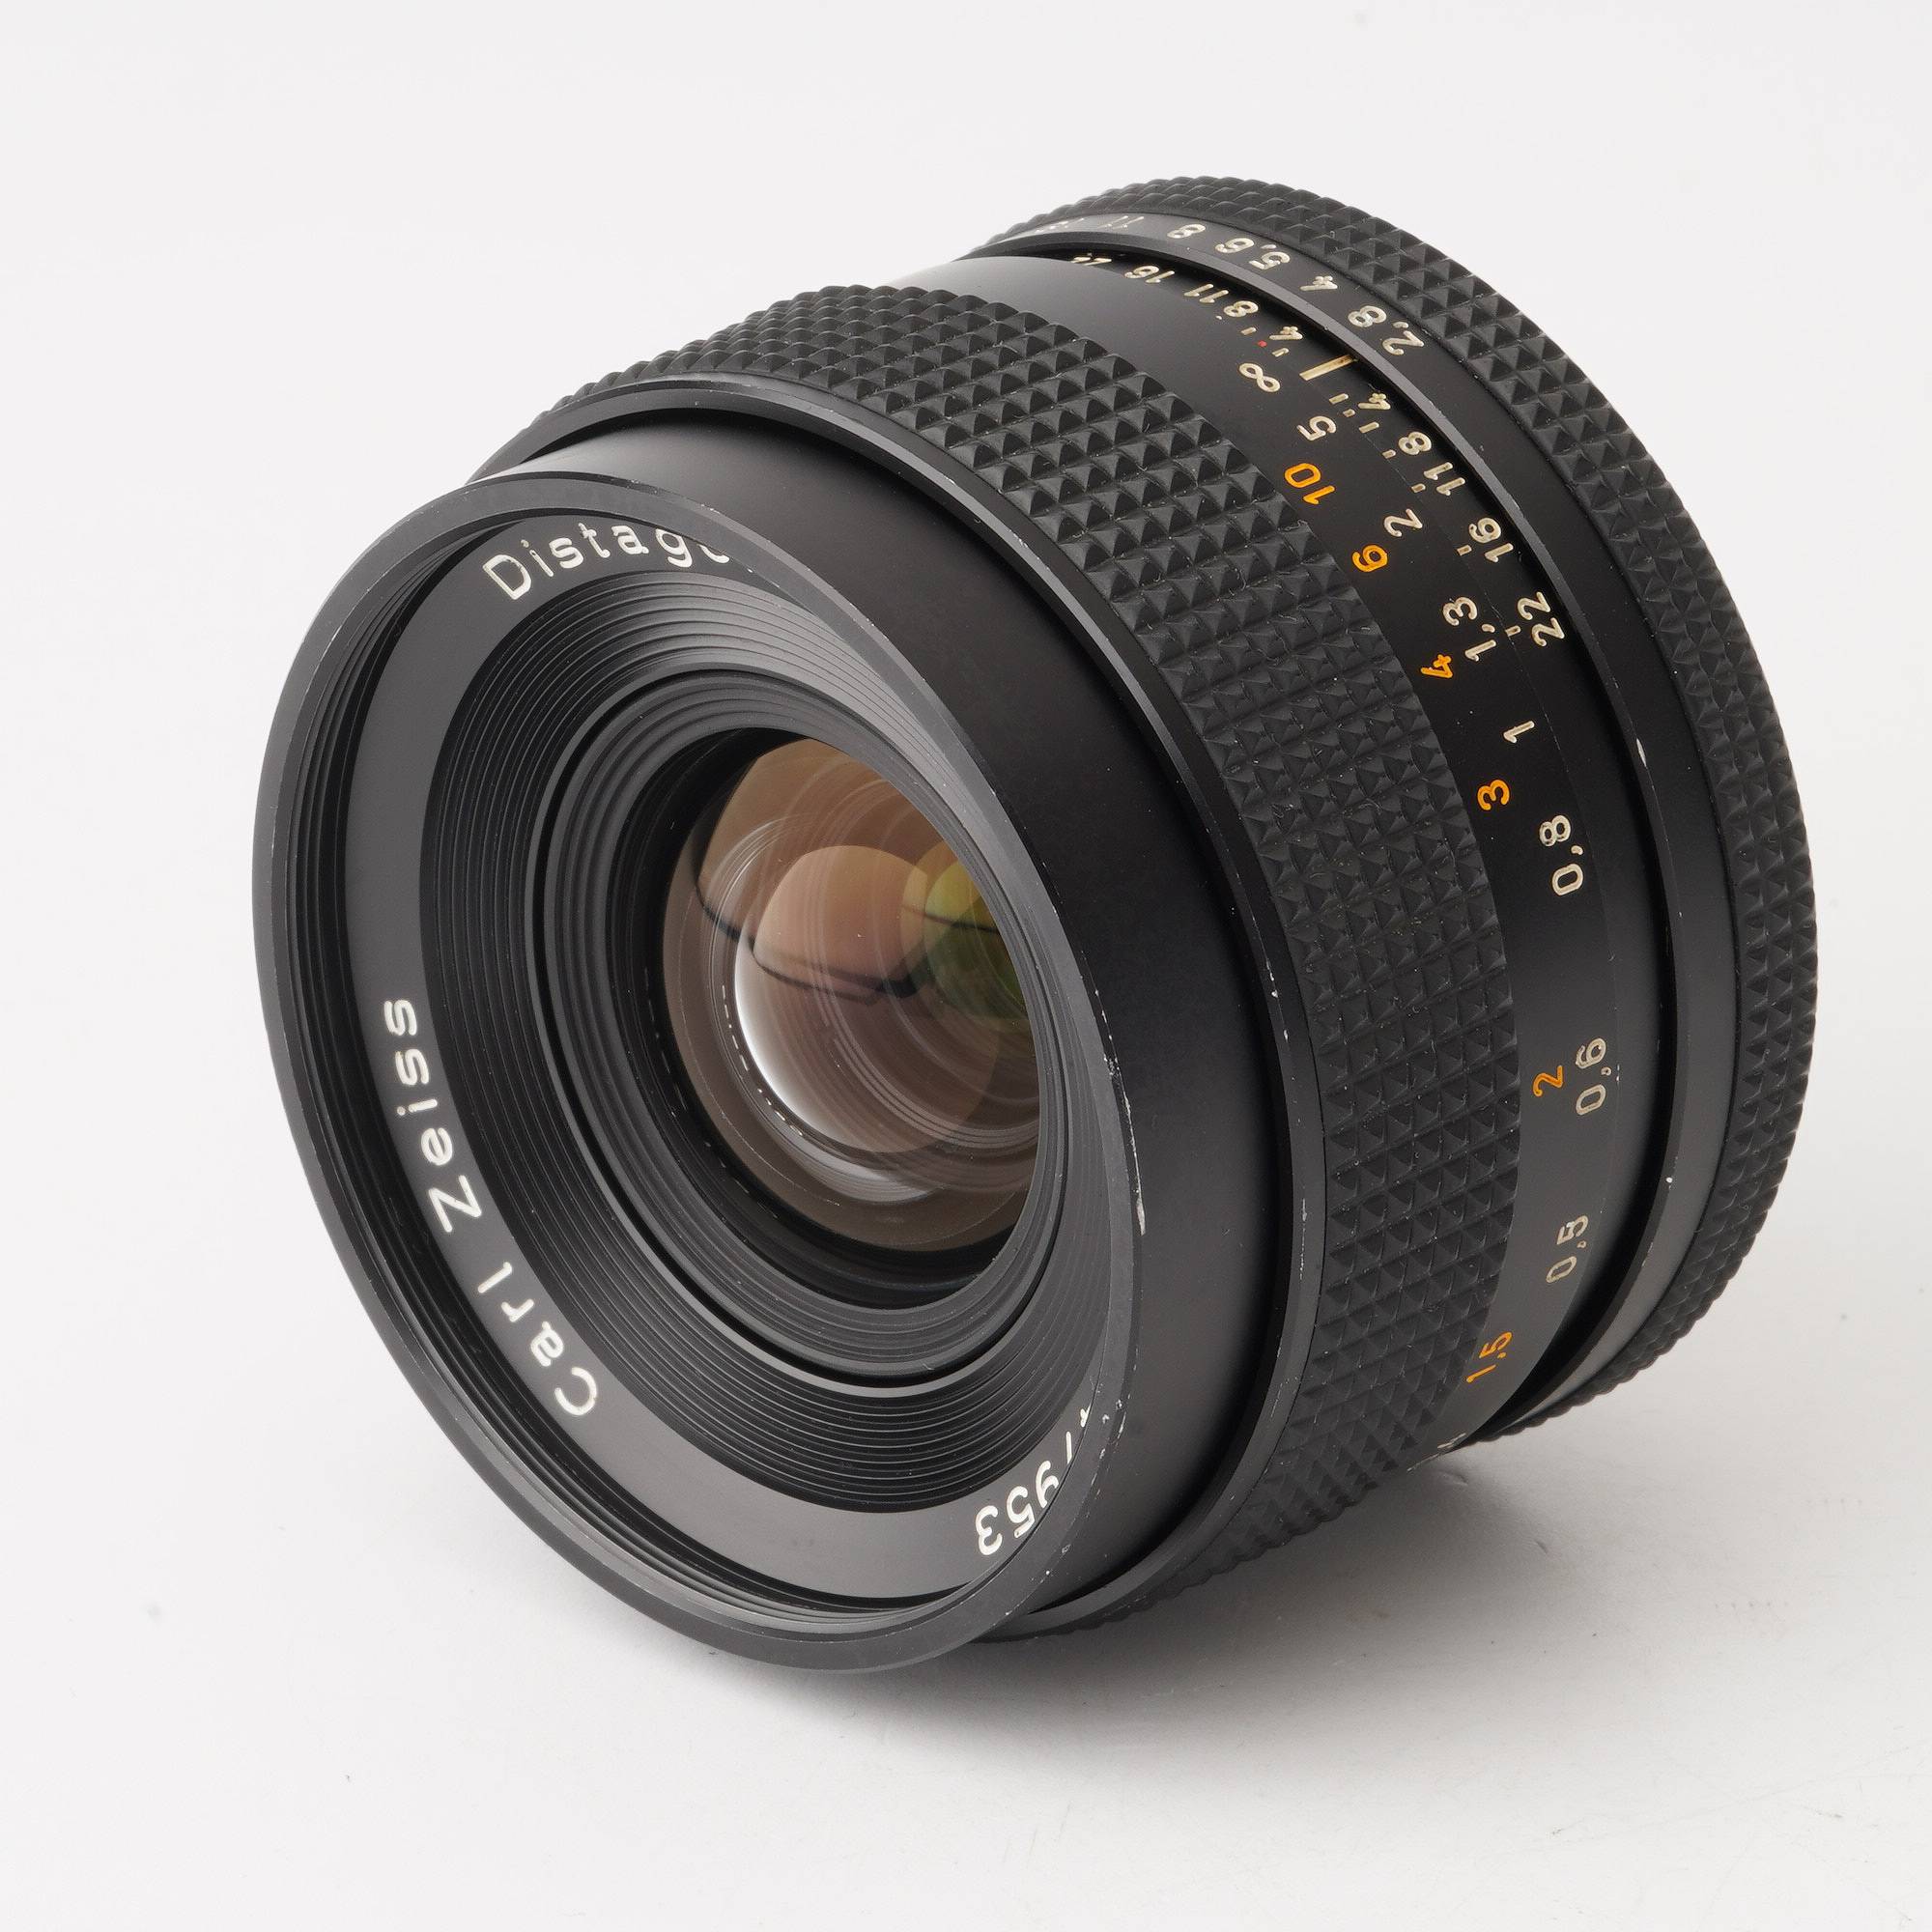 Carl Zeiss Distagon 35mm F2.8 コンタックスコンディション - レンズ 